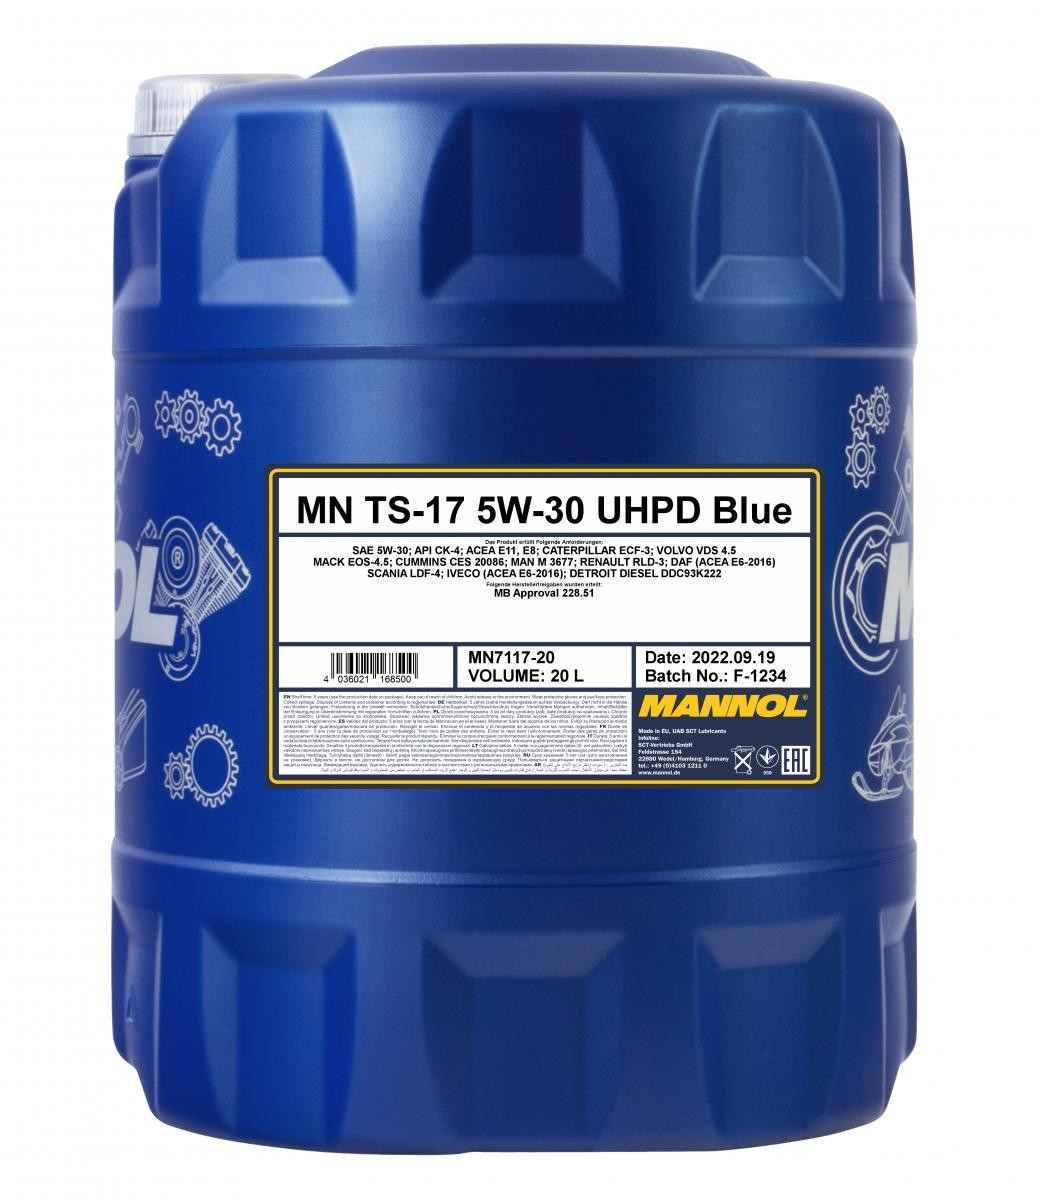 Motor oil CATERPILLAR ECF-3 MANNOL - MN7117-20 TS-17, UHPD Blue